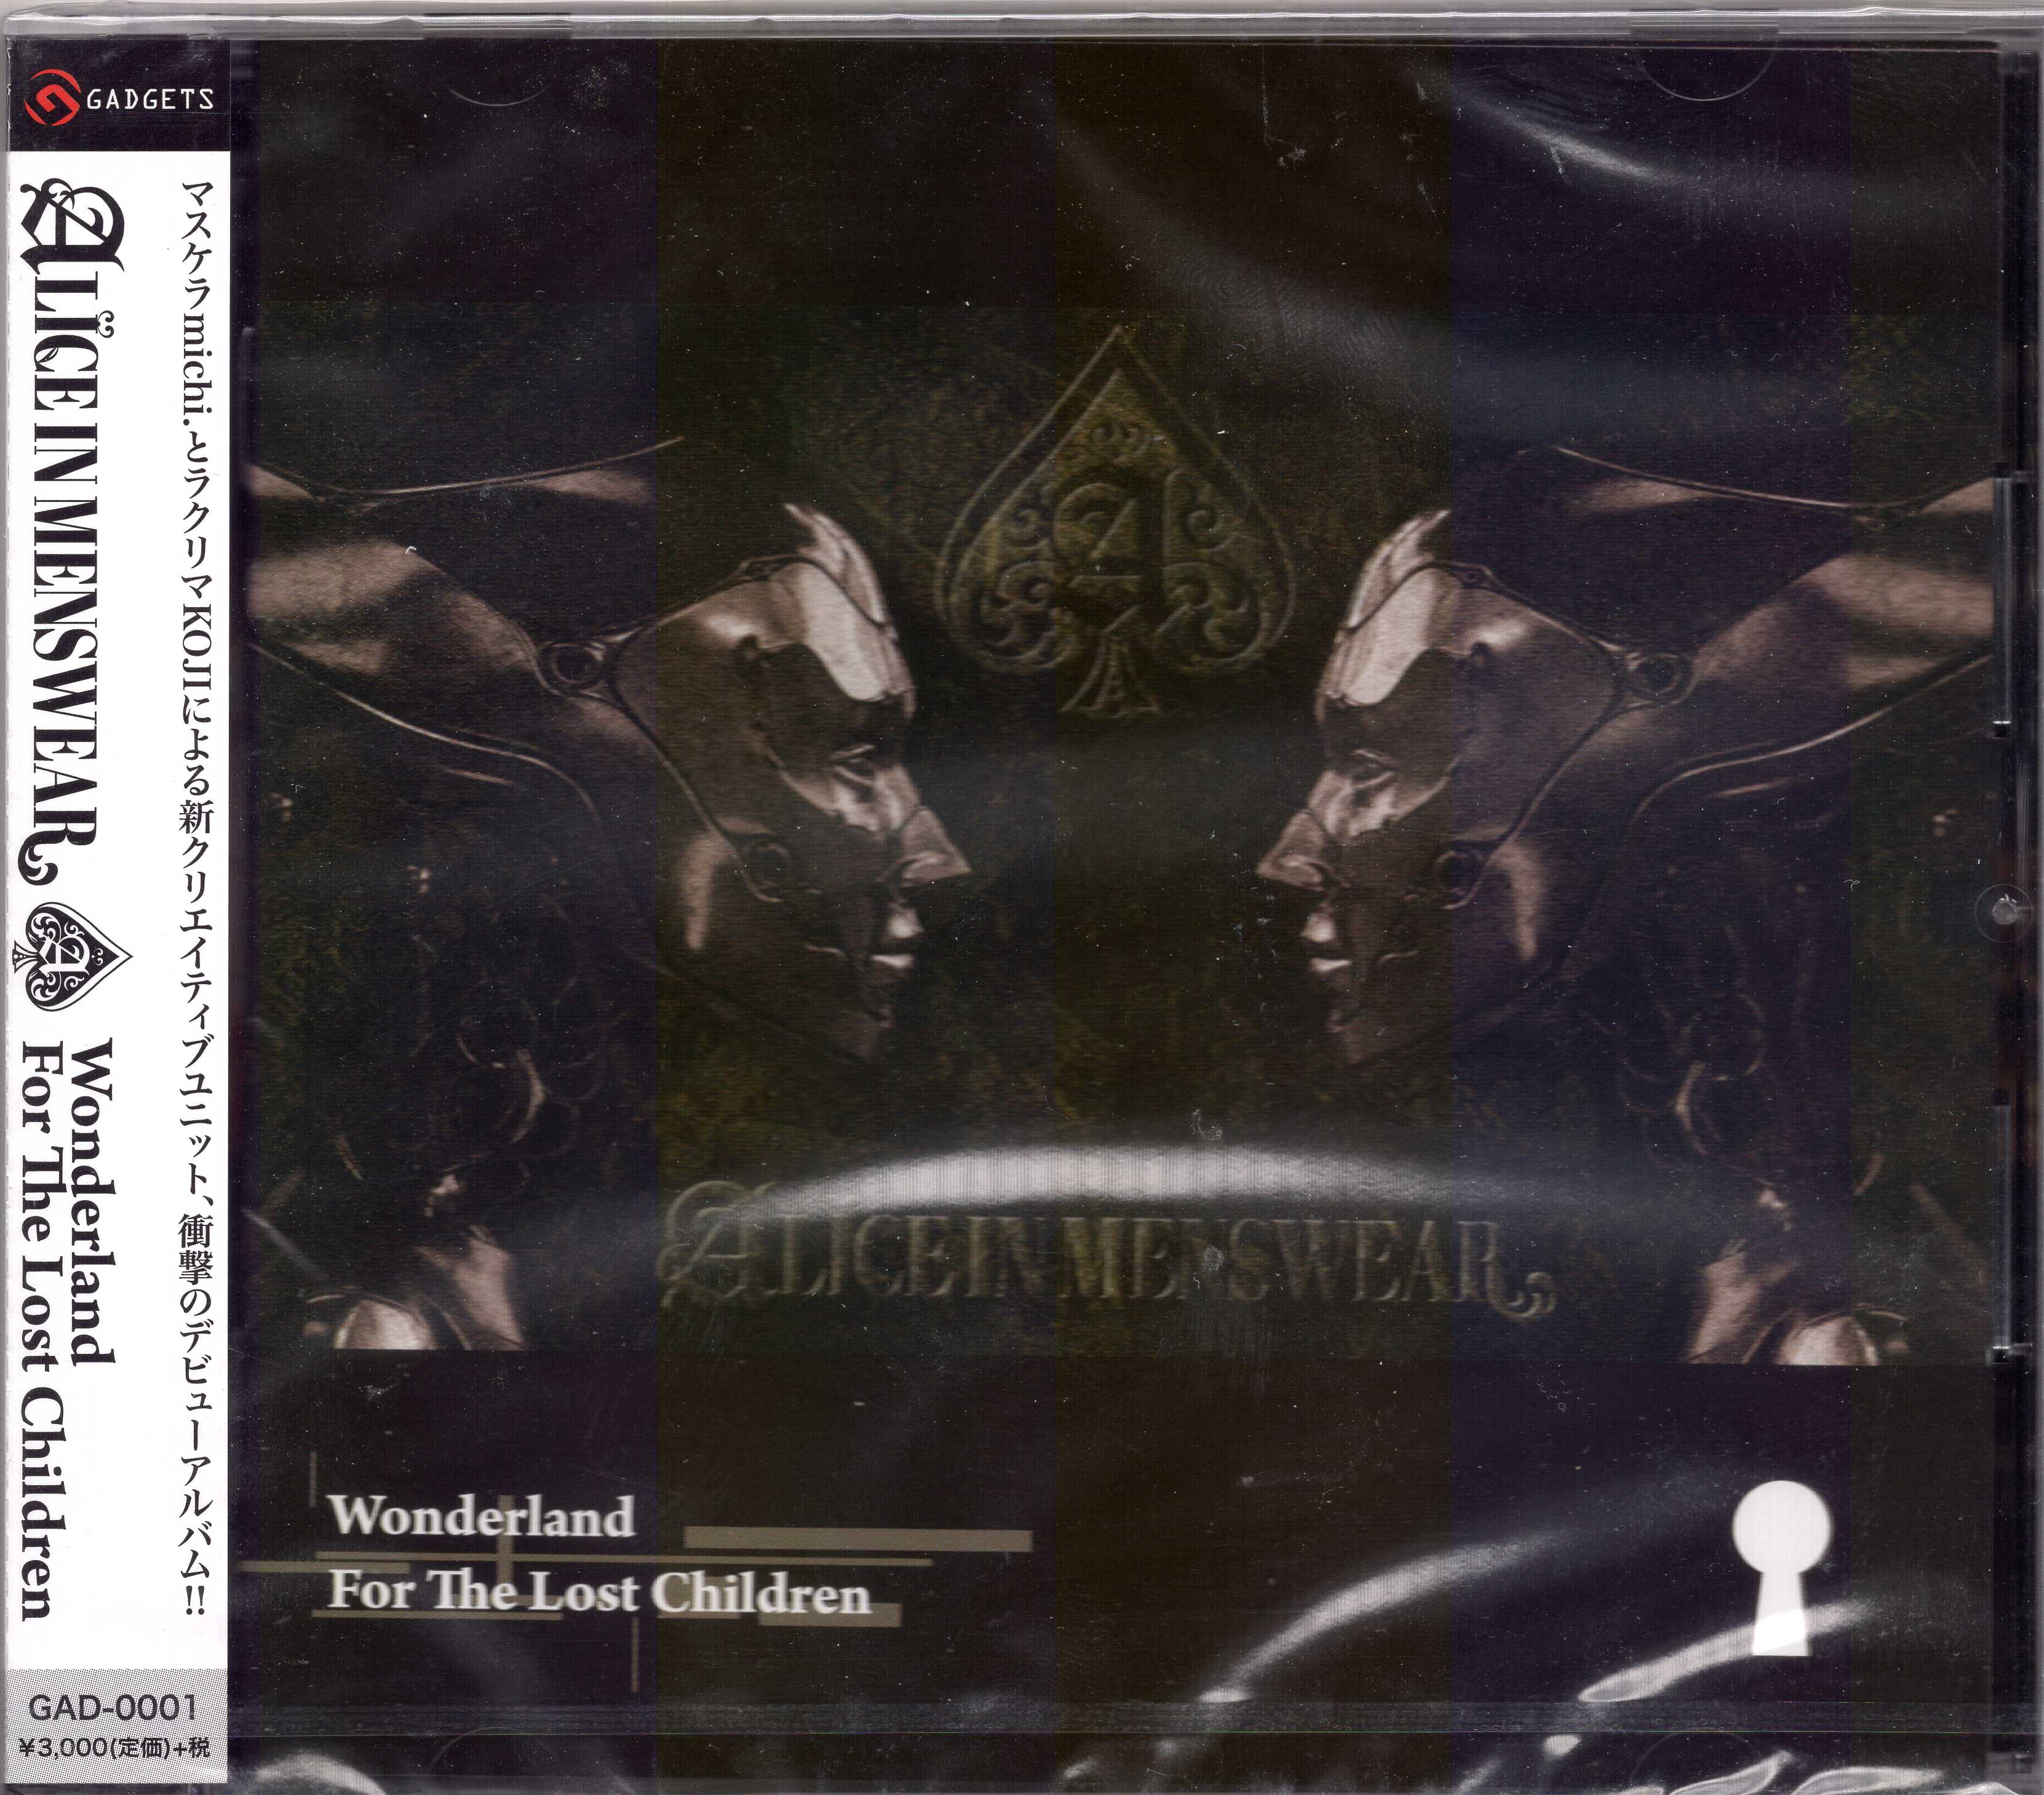 アリスインメンズウェア の CD Wonderland For The Lost Children